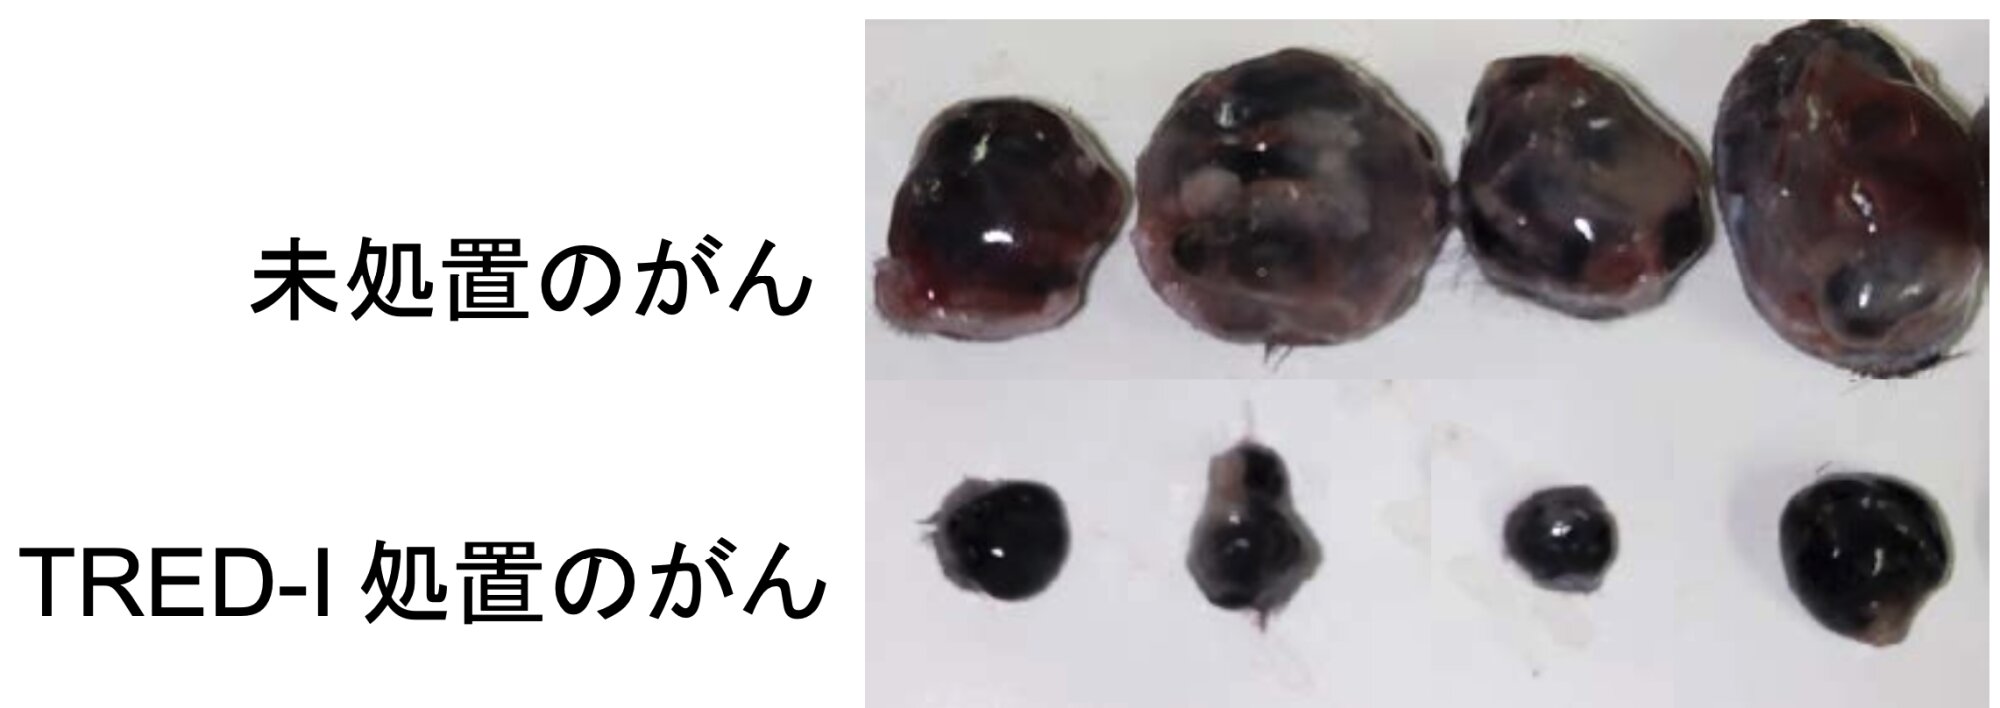 マウスの悪性黒色腫（メラノーマ）細胞を使ったTRED-Iシステムの実験の比較。北海道大学のリリースより